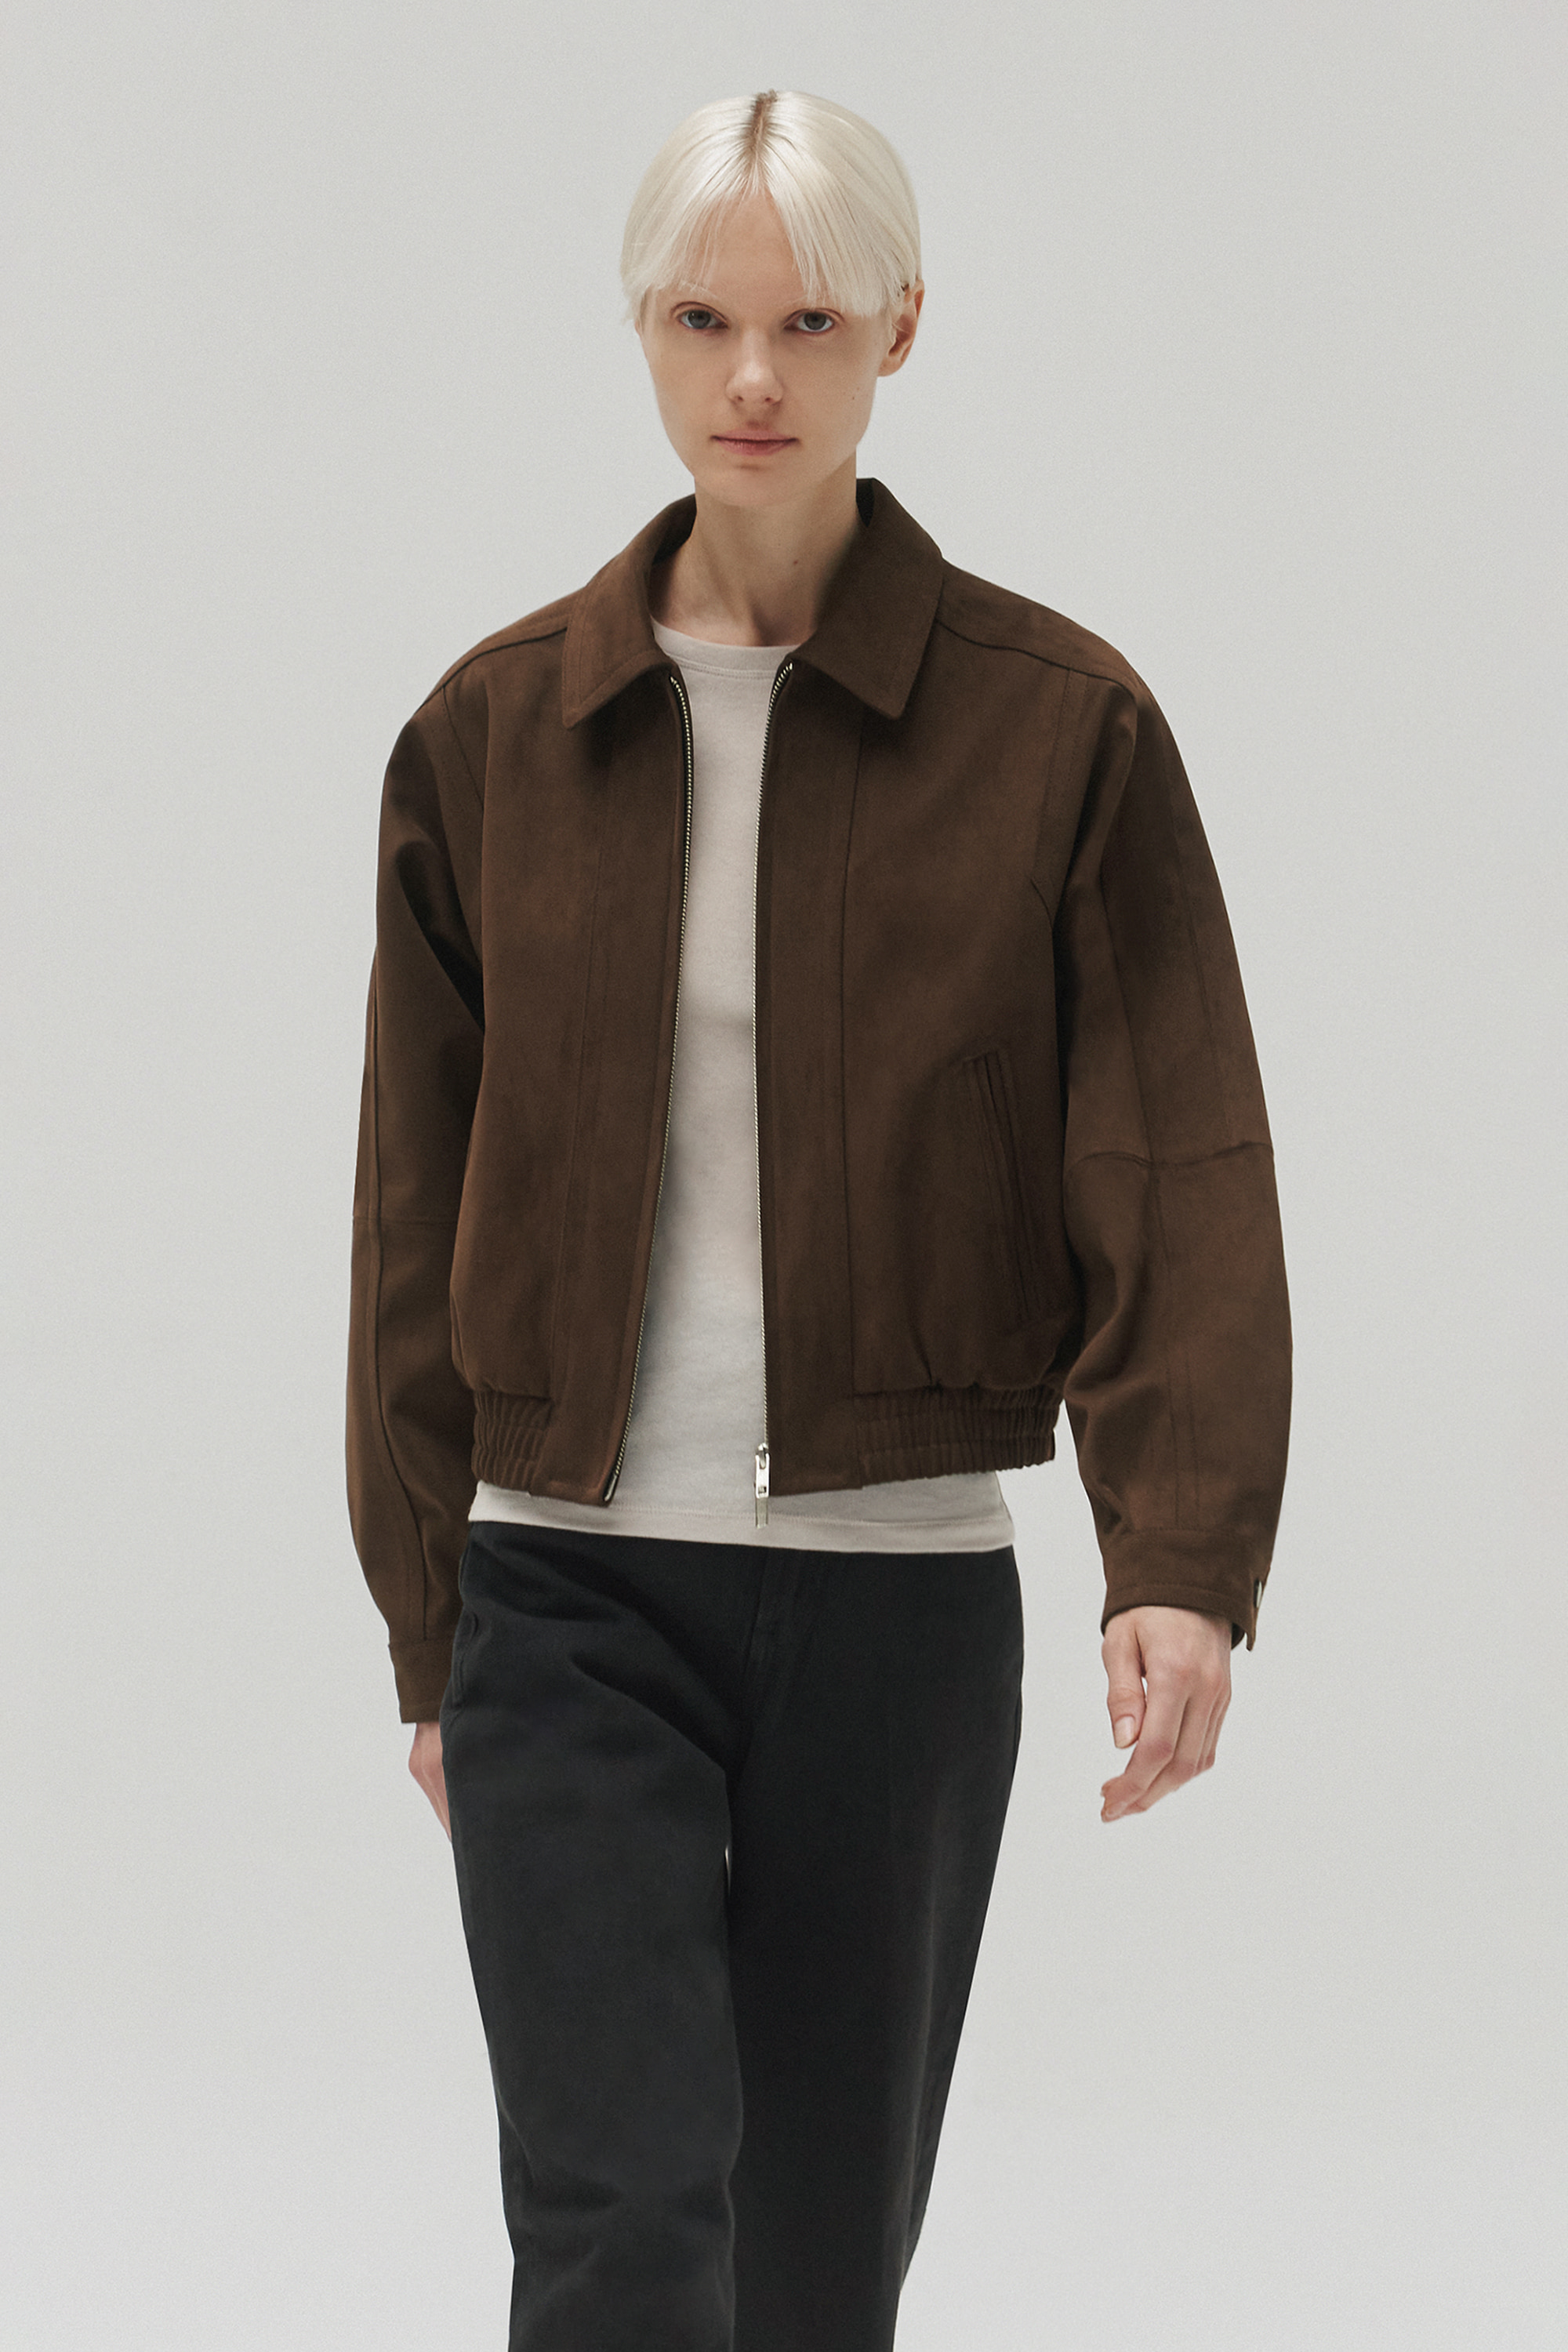 Western suede jacket (brown)